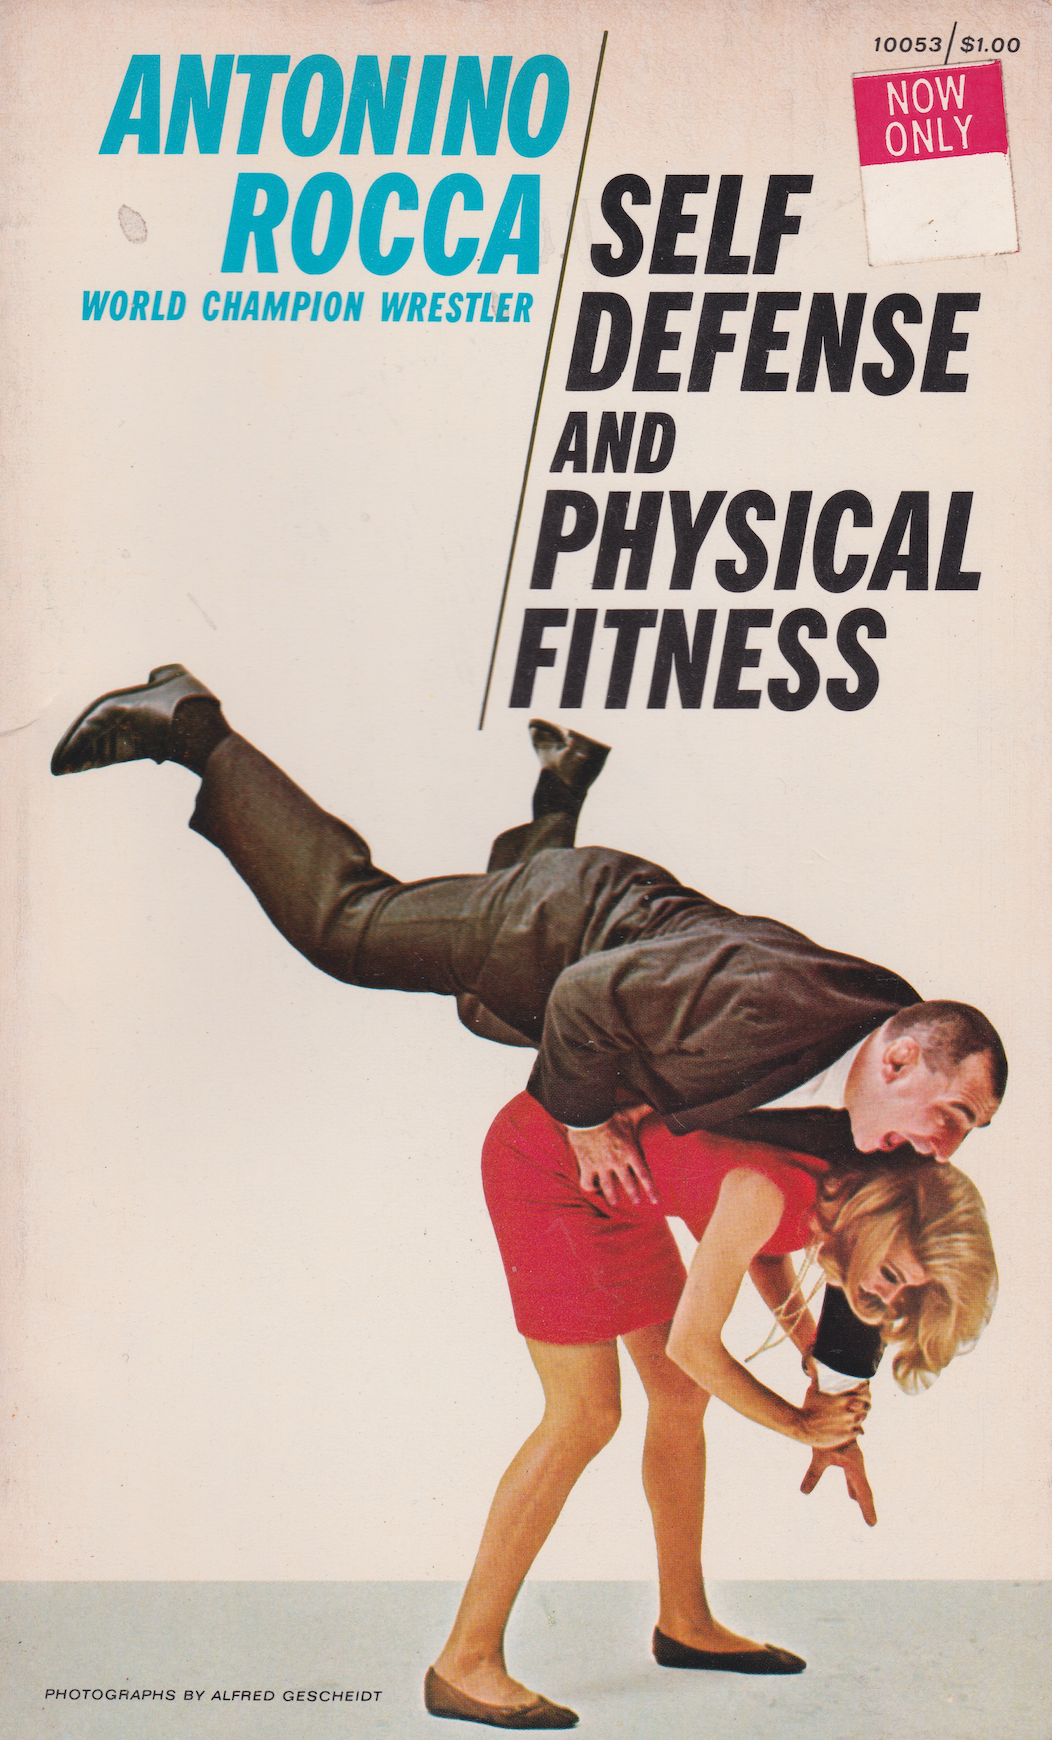 Libro de defensa personal y aptitud física de Antonino Rocca (usado)